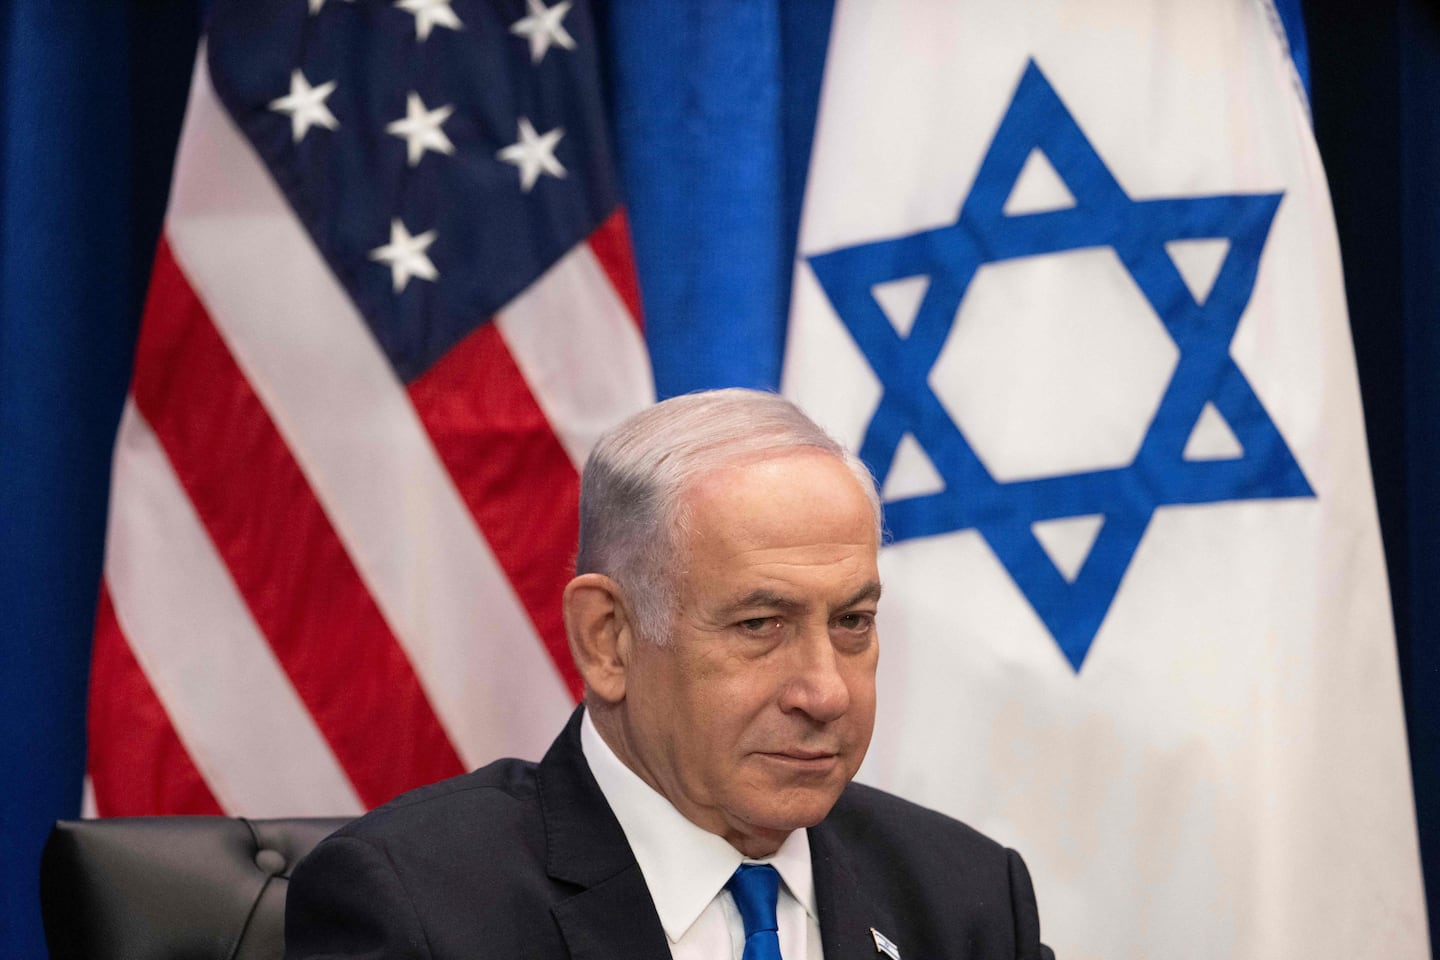 Benjamin Netanyahu pronuncia discurso ante Congreso de Estados Unidos en medio de tensiones